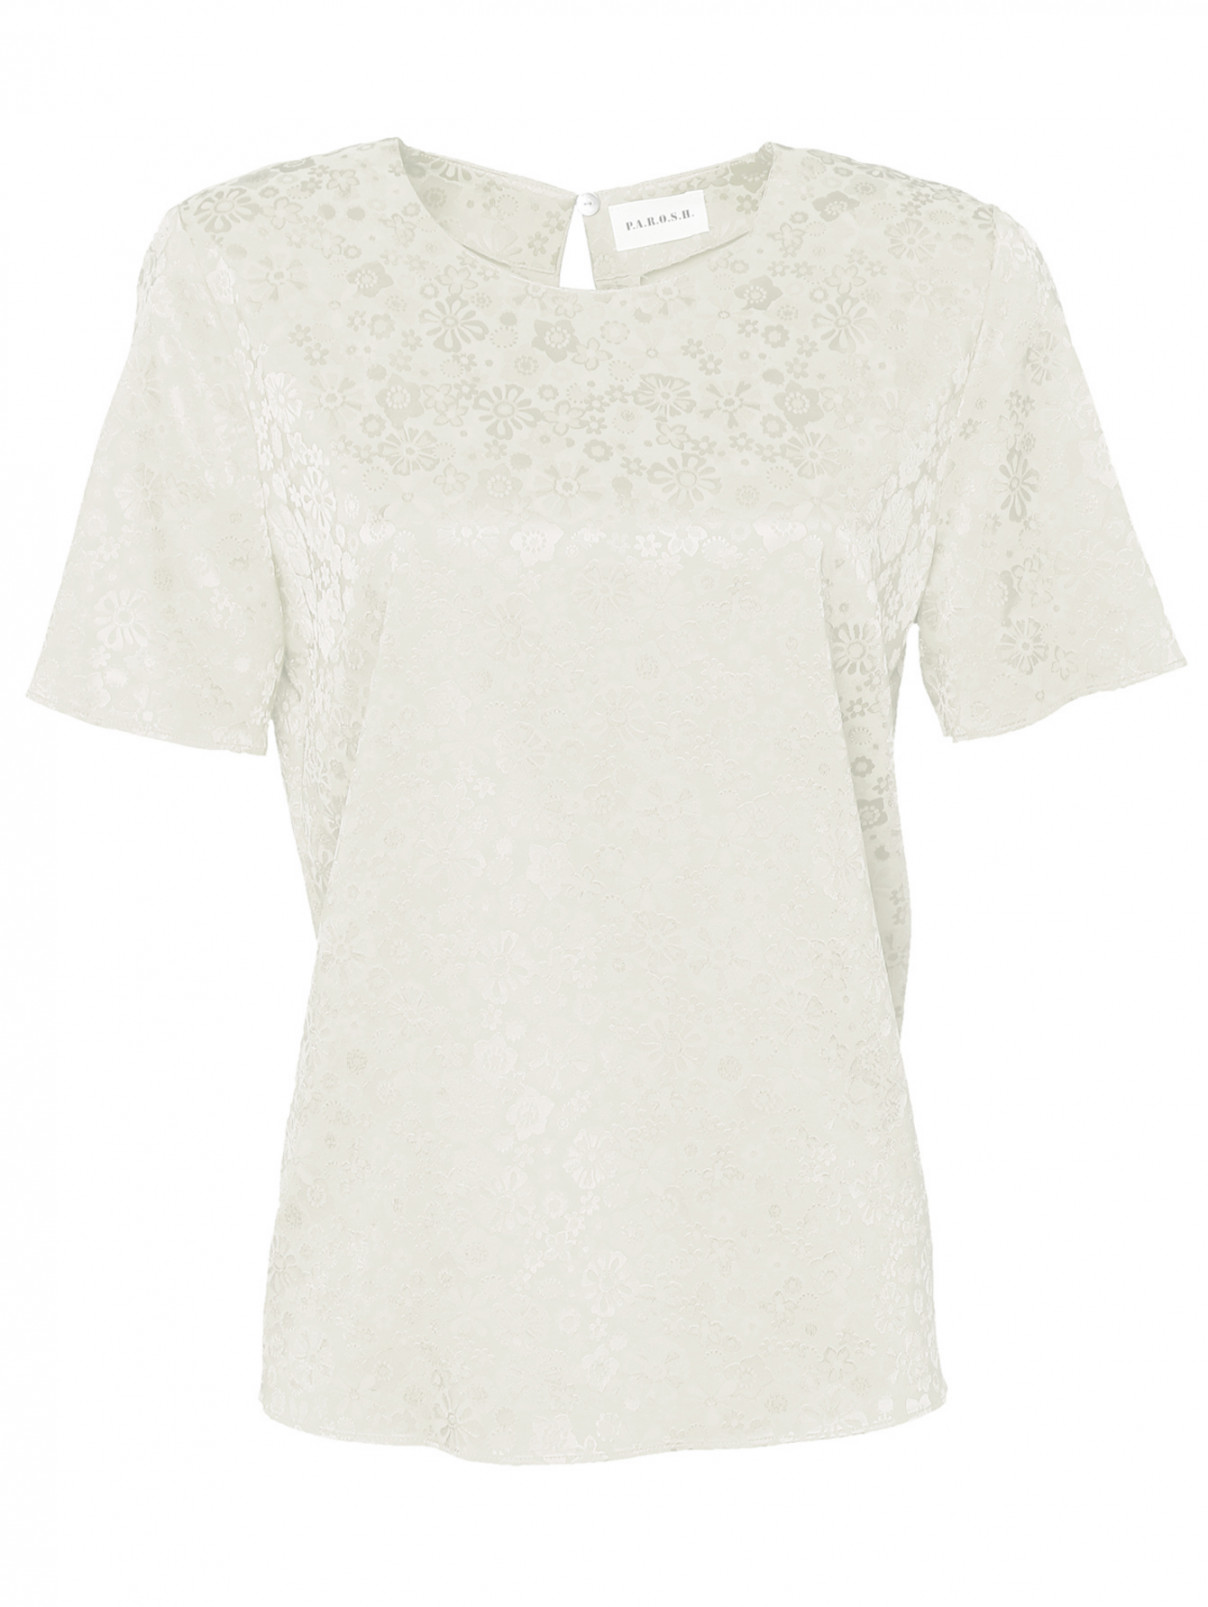 Фактурная блуза с коротким рукавом P.A.R.O.S.H.  –  Общий вид  – Цвет:  Белый